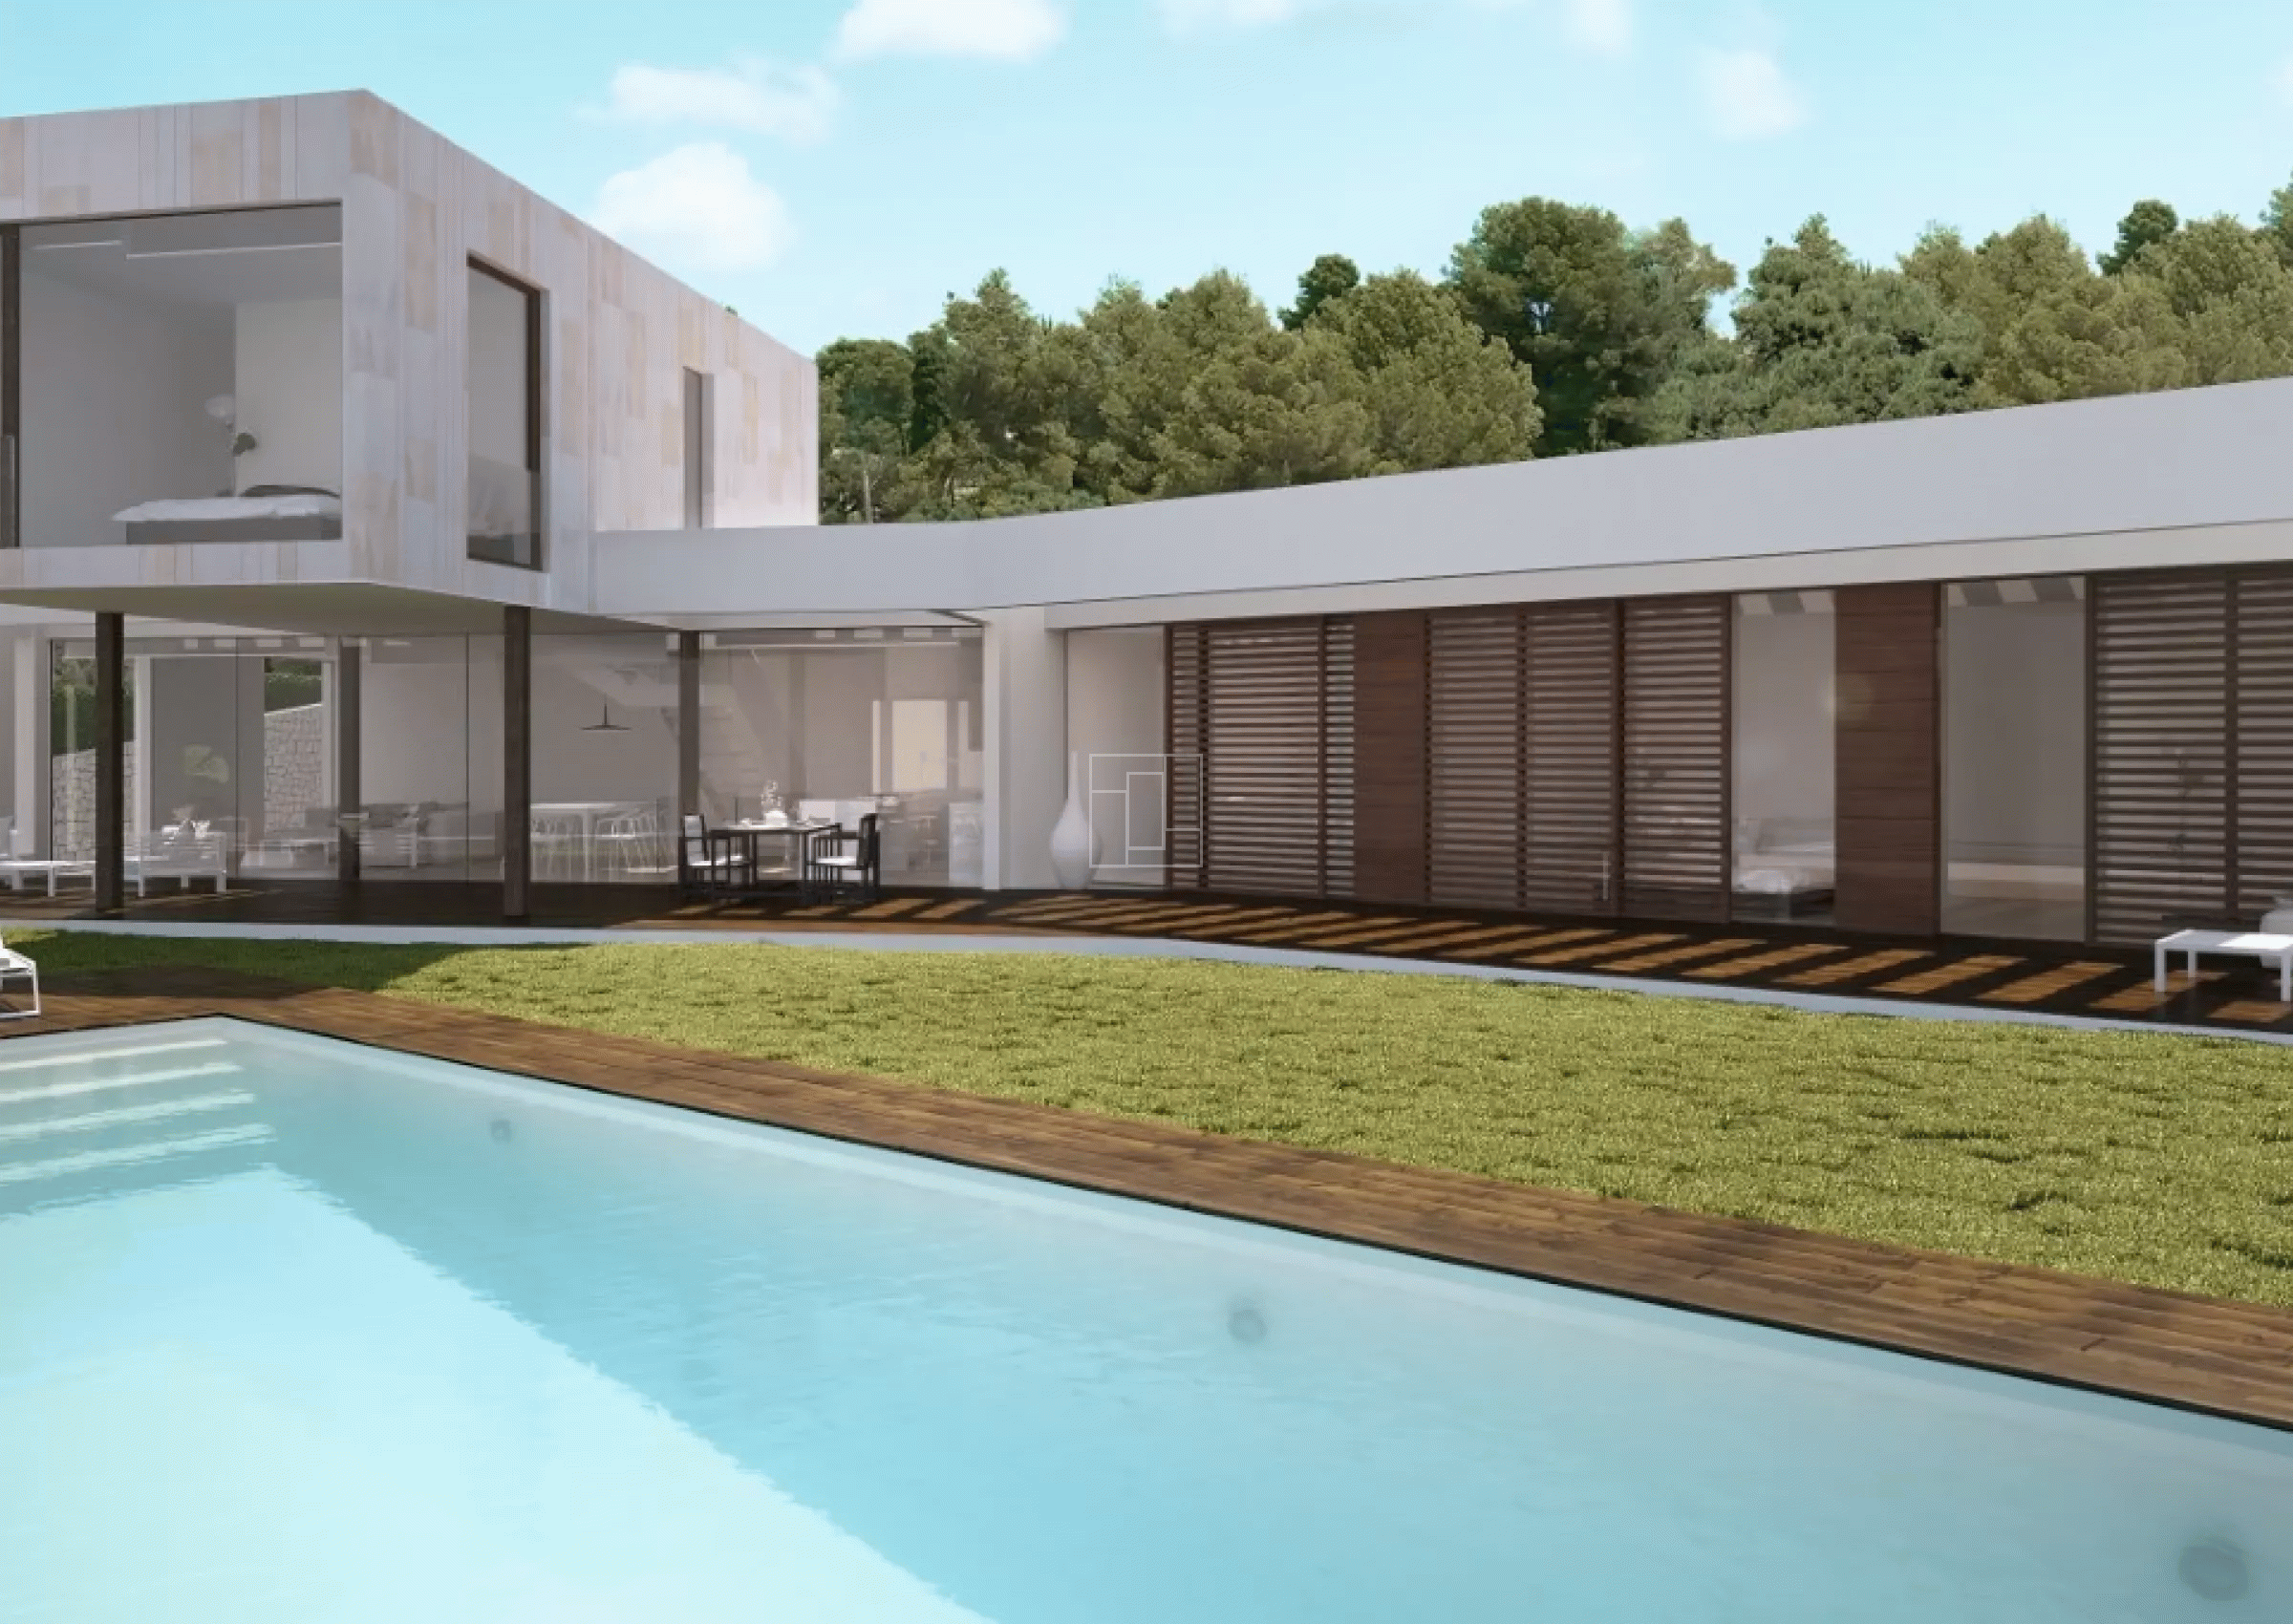 Building project with permit sea view villa in Jávea
bp